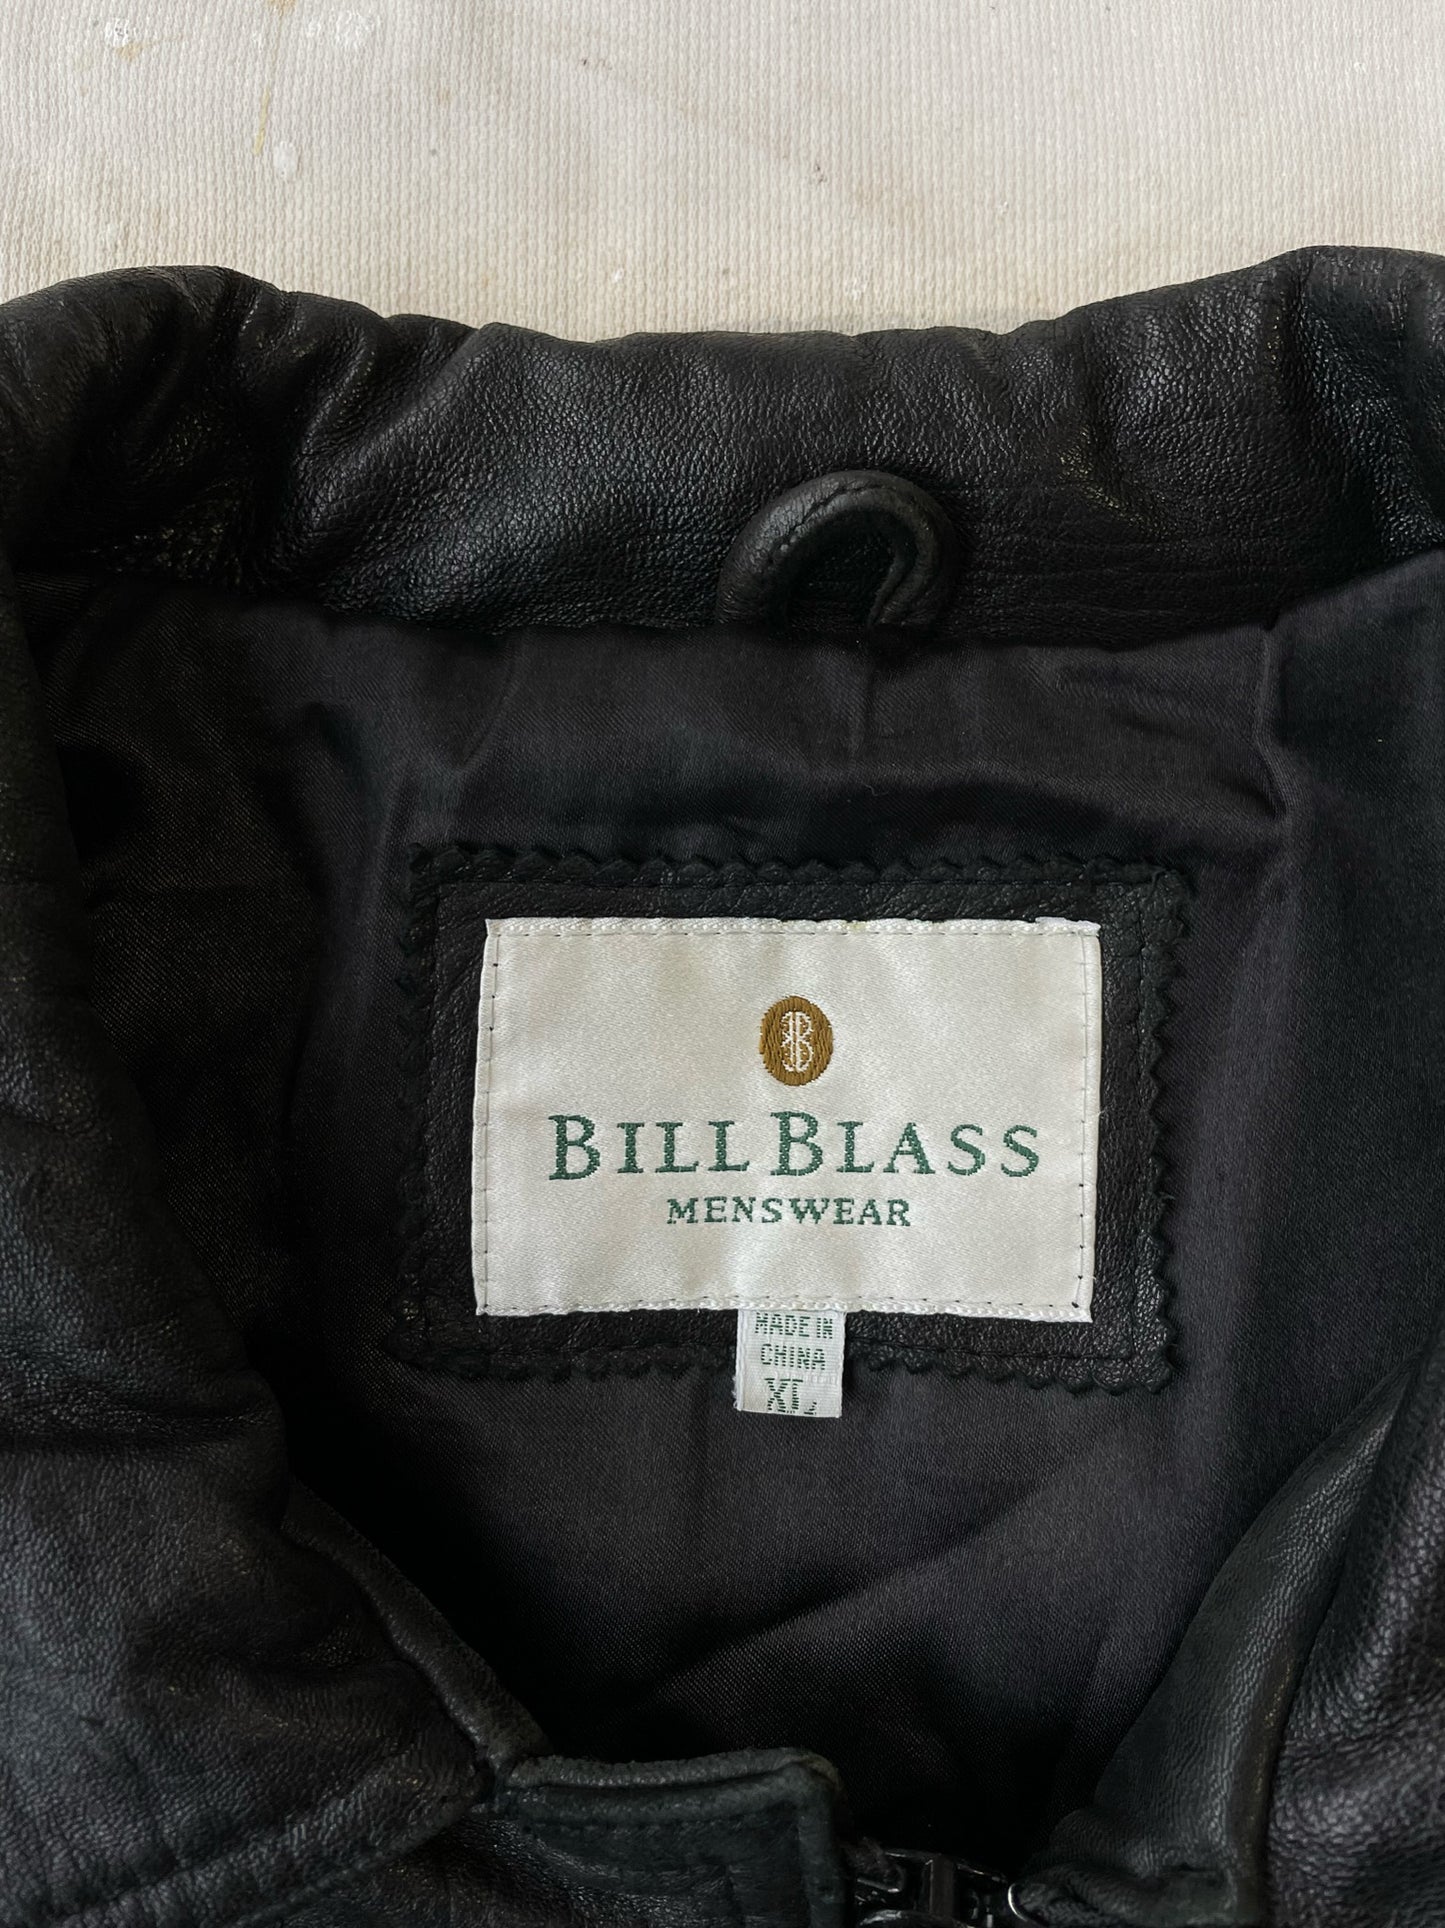 Bill Blass Leather Jacket—[XL]